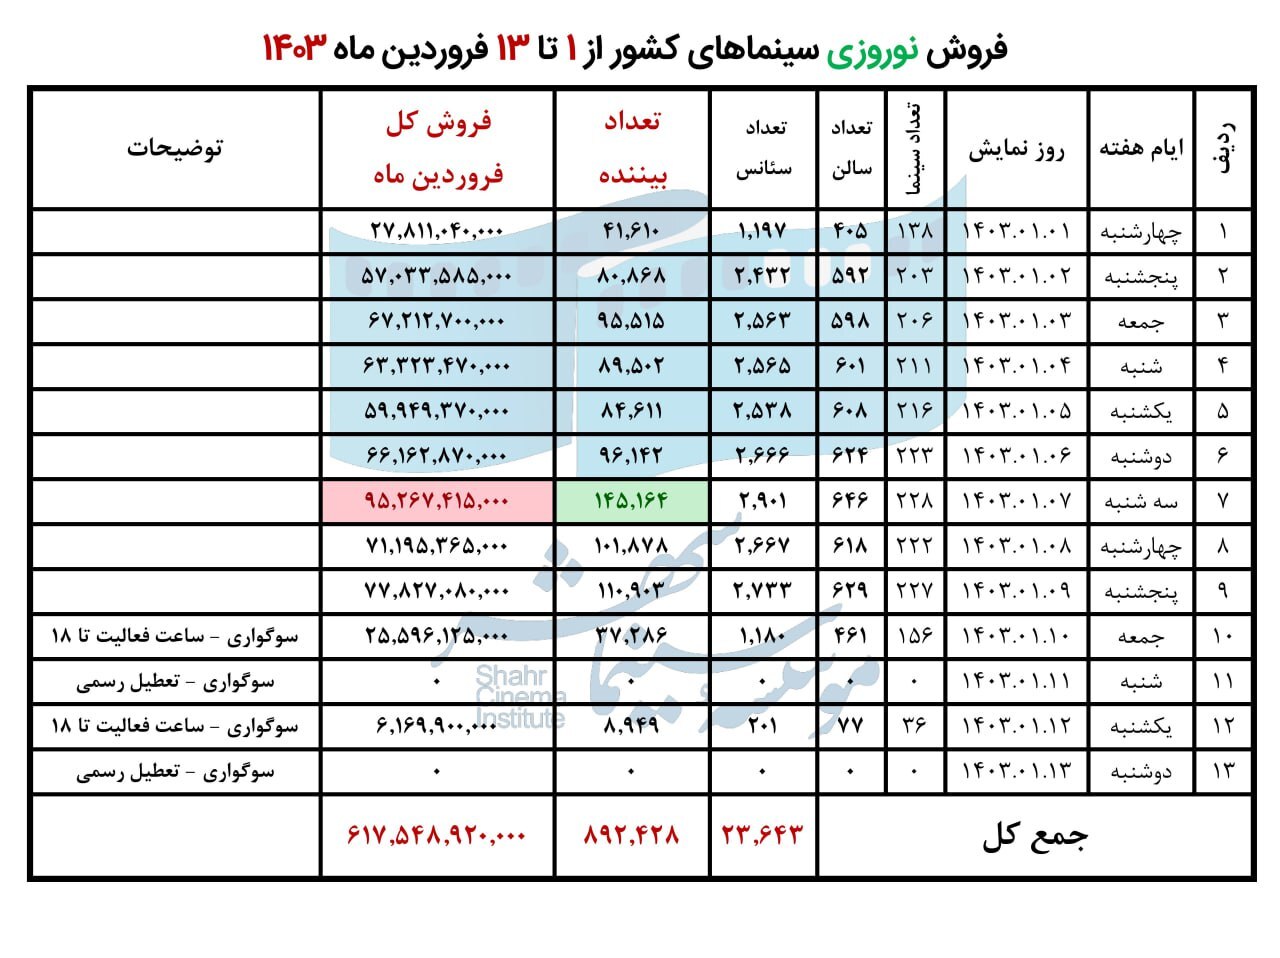 فروش نوروزی سینمای ایران در سال ۱۴۰۳ اعلام شد